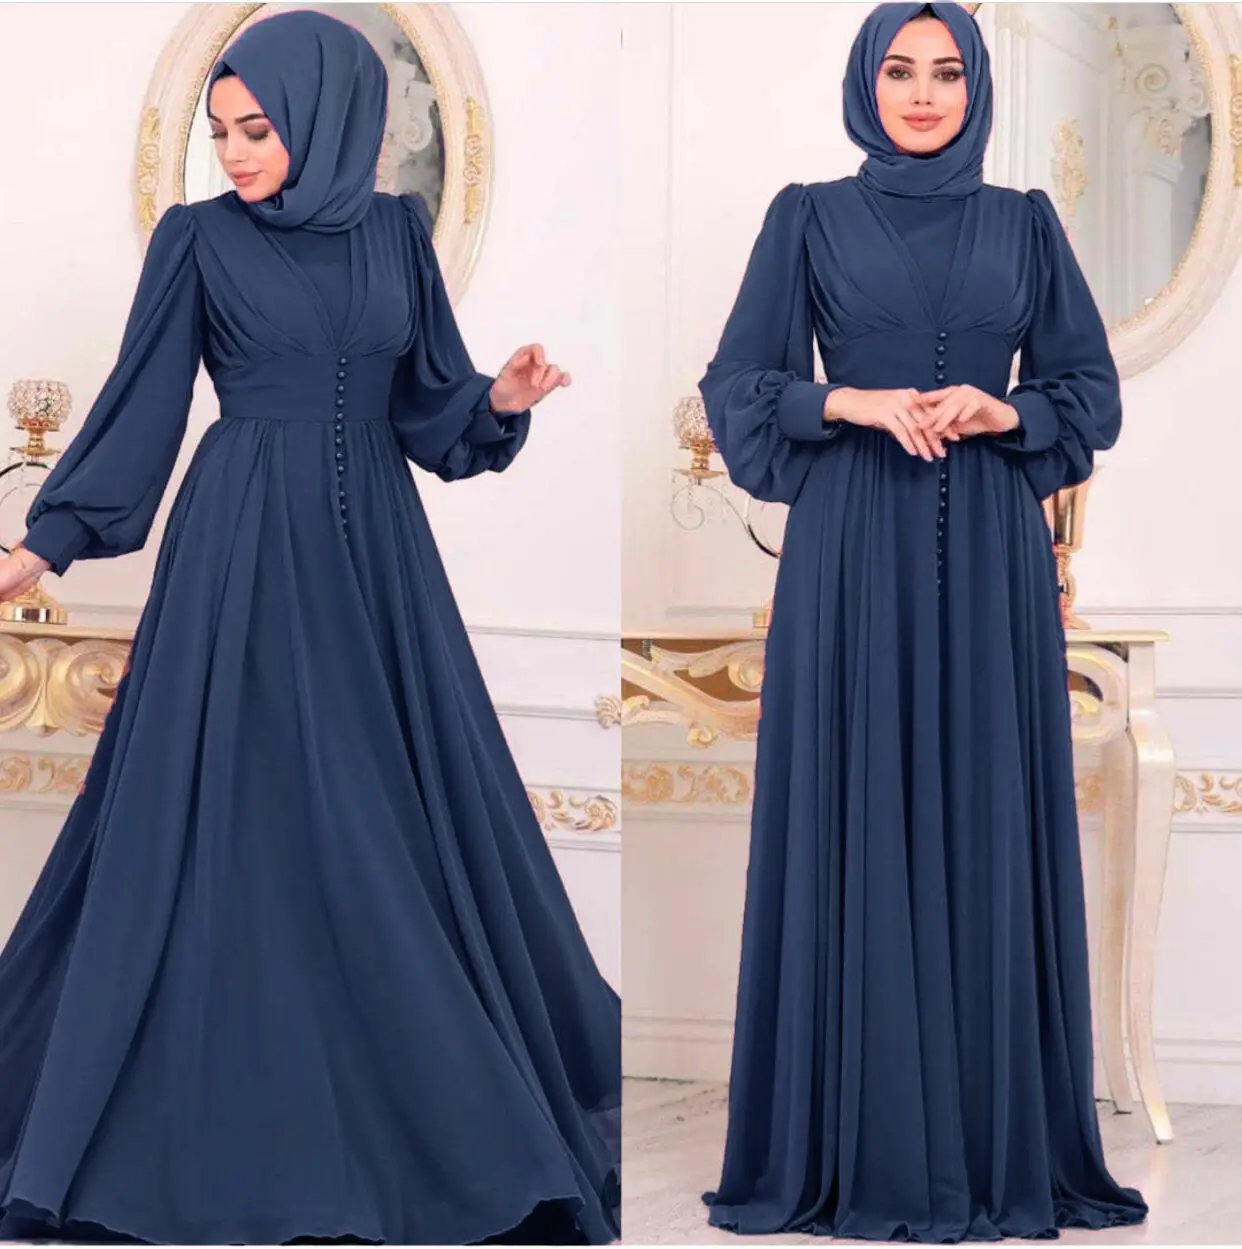 توريد مخصص 2024 عباية للمرأة المسلمة ملابس تركية روب أحدث التصاميم الطويلة الطية للمرأة المسلمة دبي من ملابس إسلامية فستان طويل للسيدات المسلمات